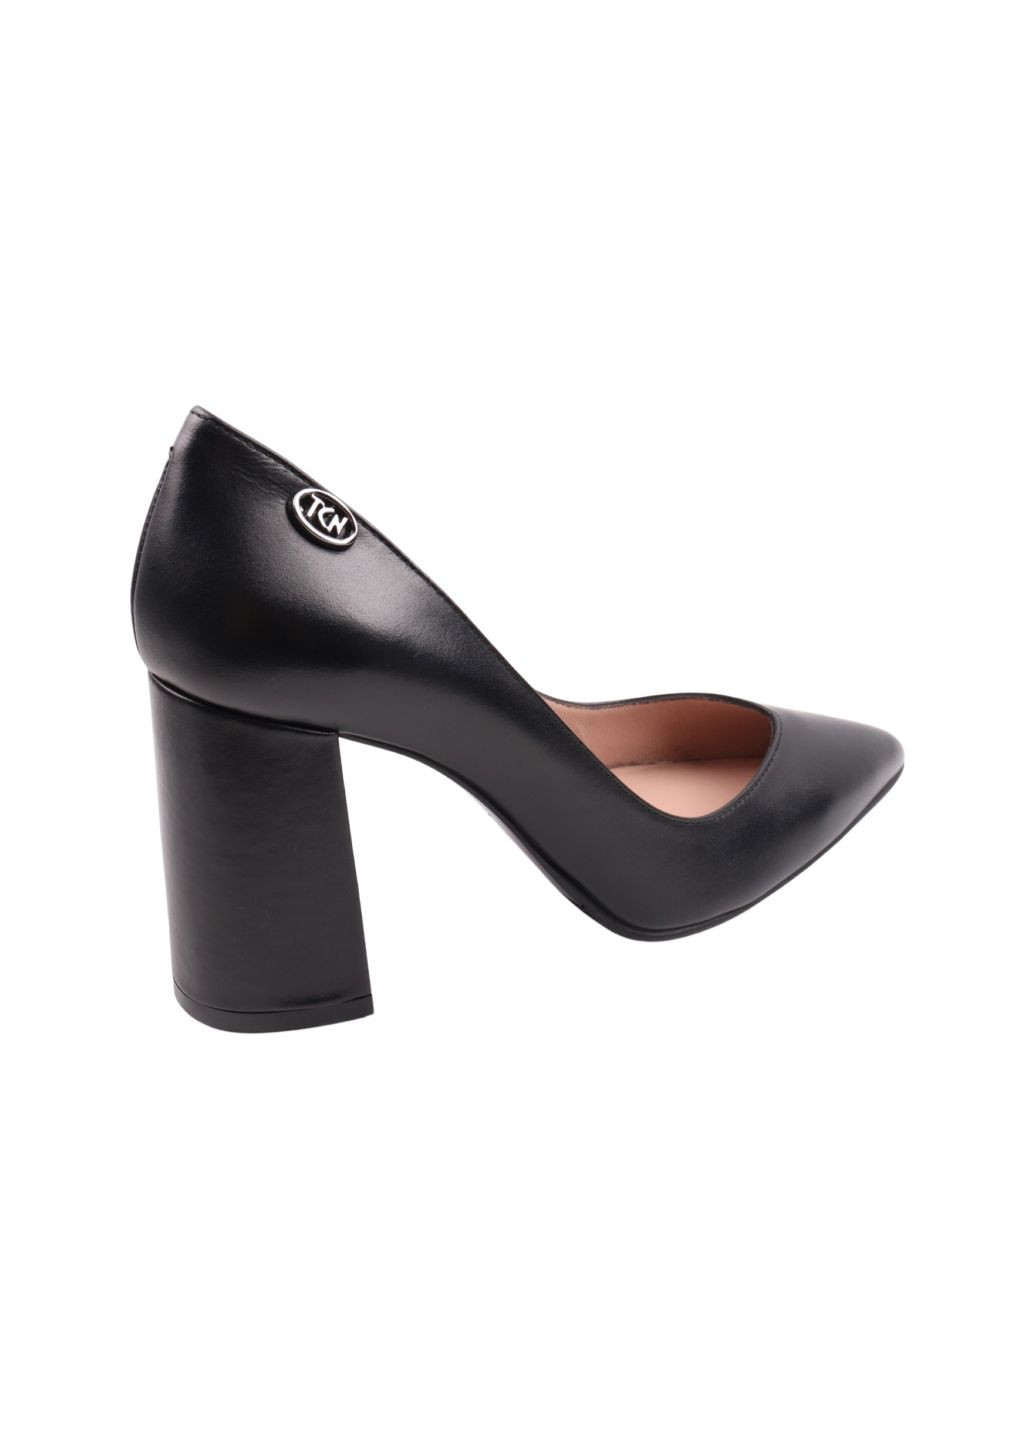 Туфлі жіночі чорні натуральна шкіра Tucino 599-23dt (257933356)